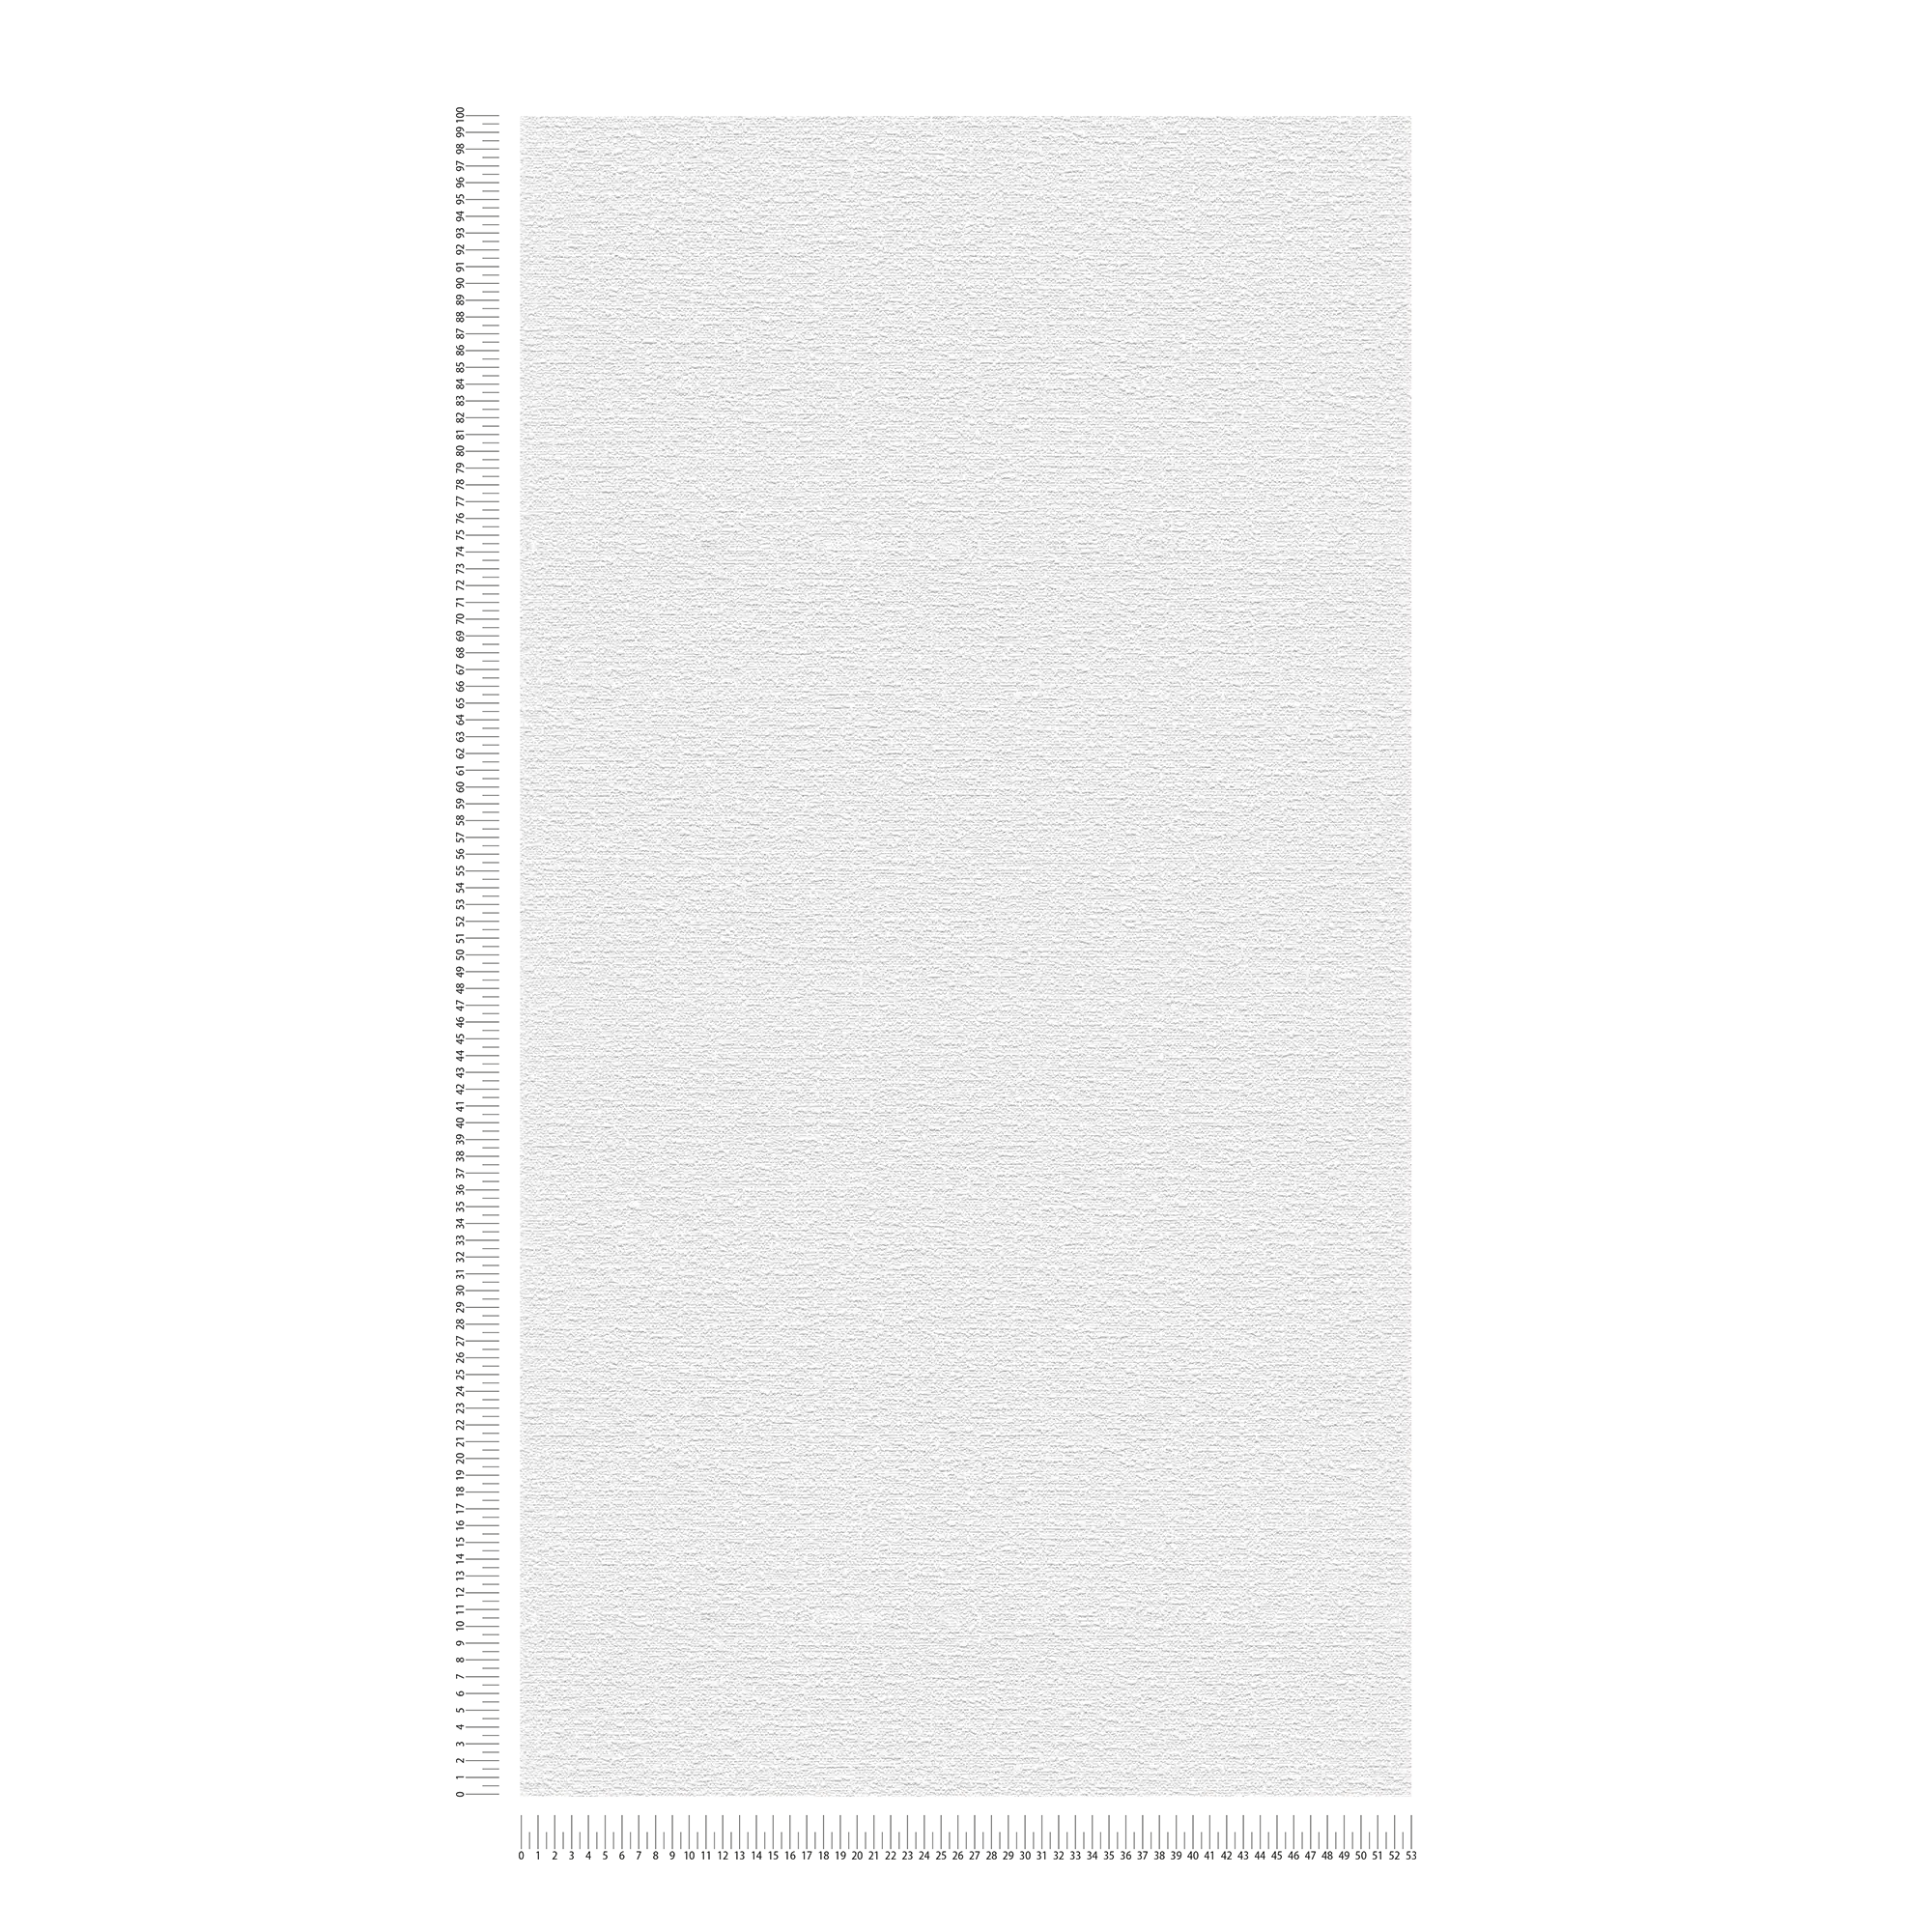             Papel pintado unitario con textura de aspecto textil - blanco
        